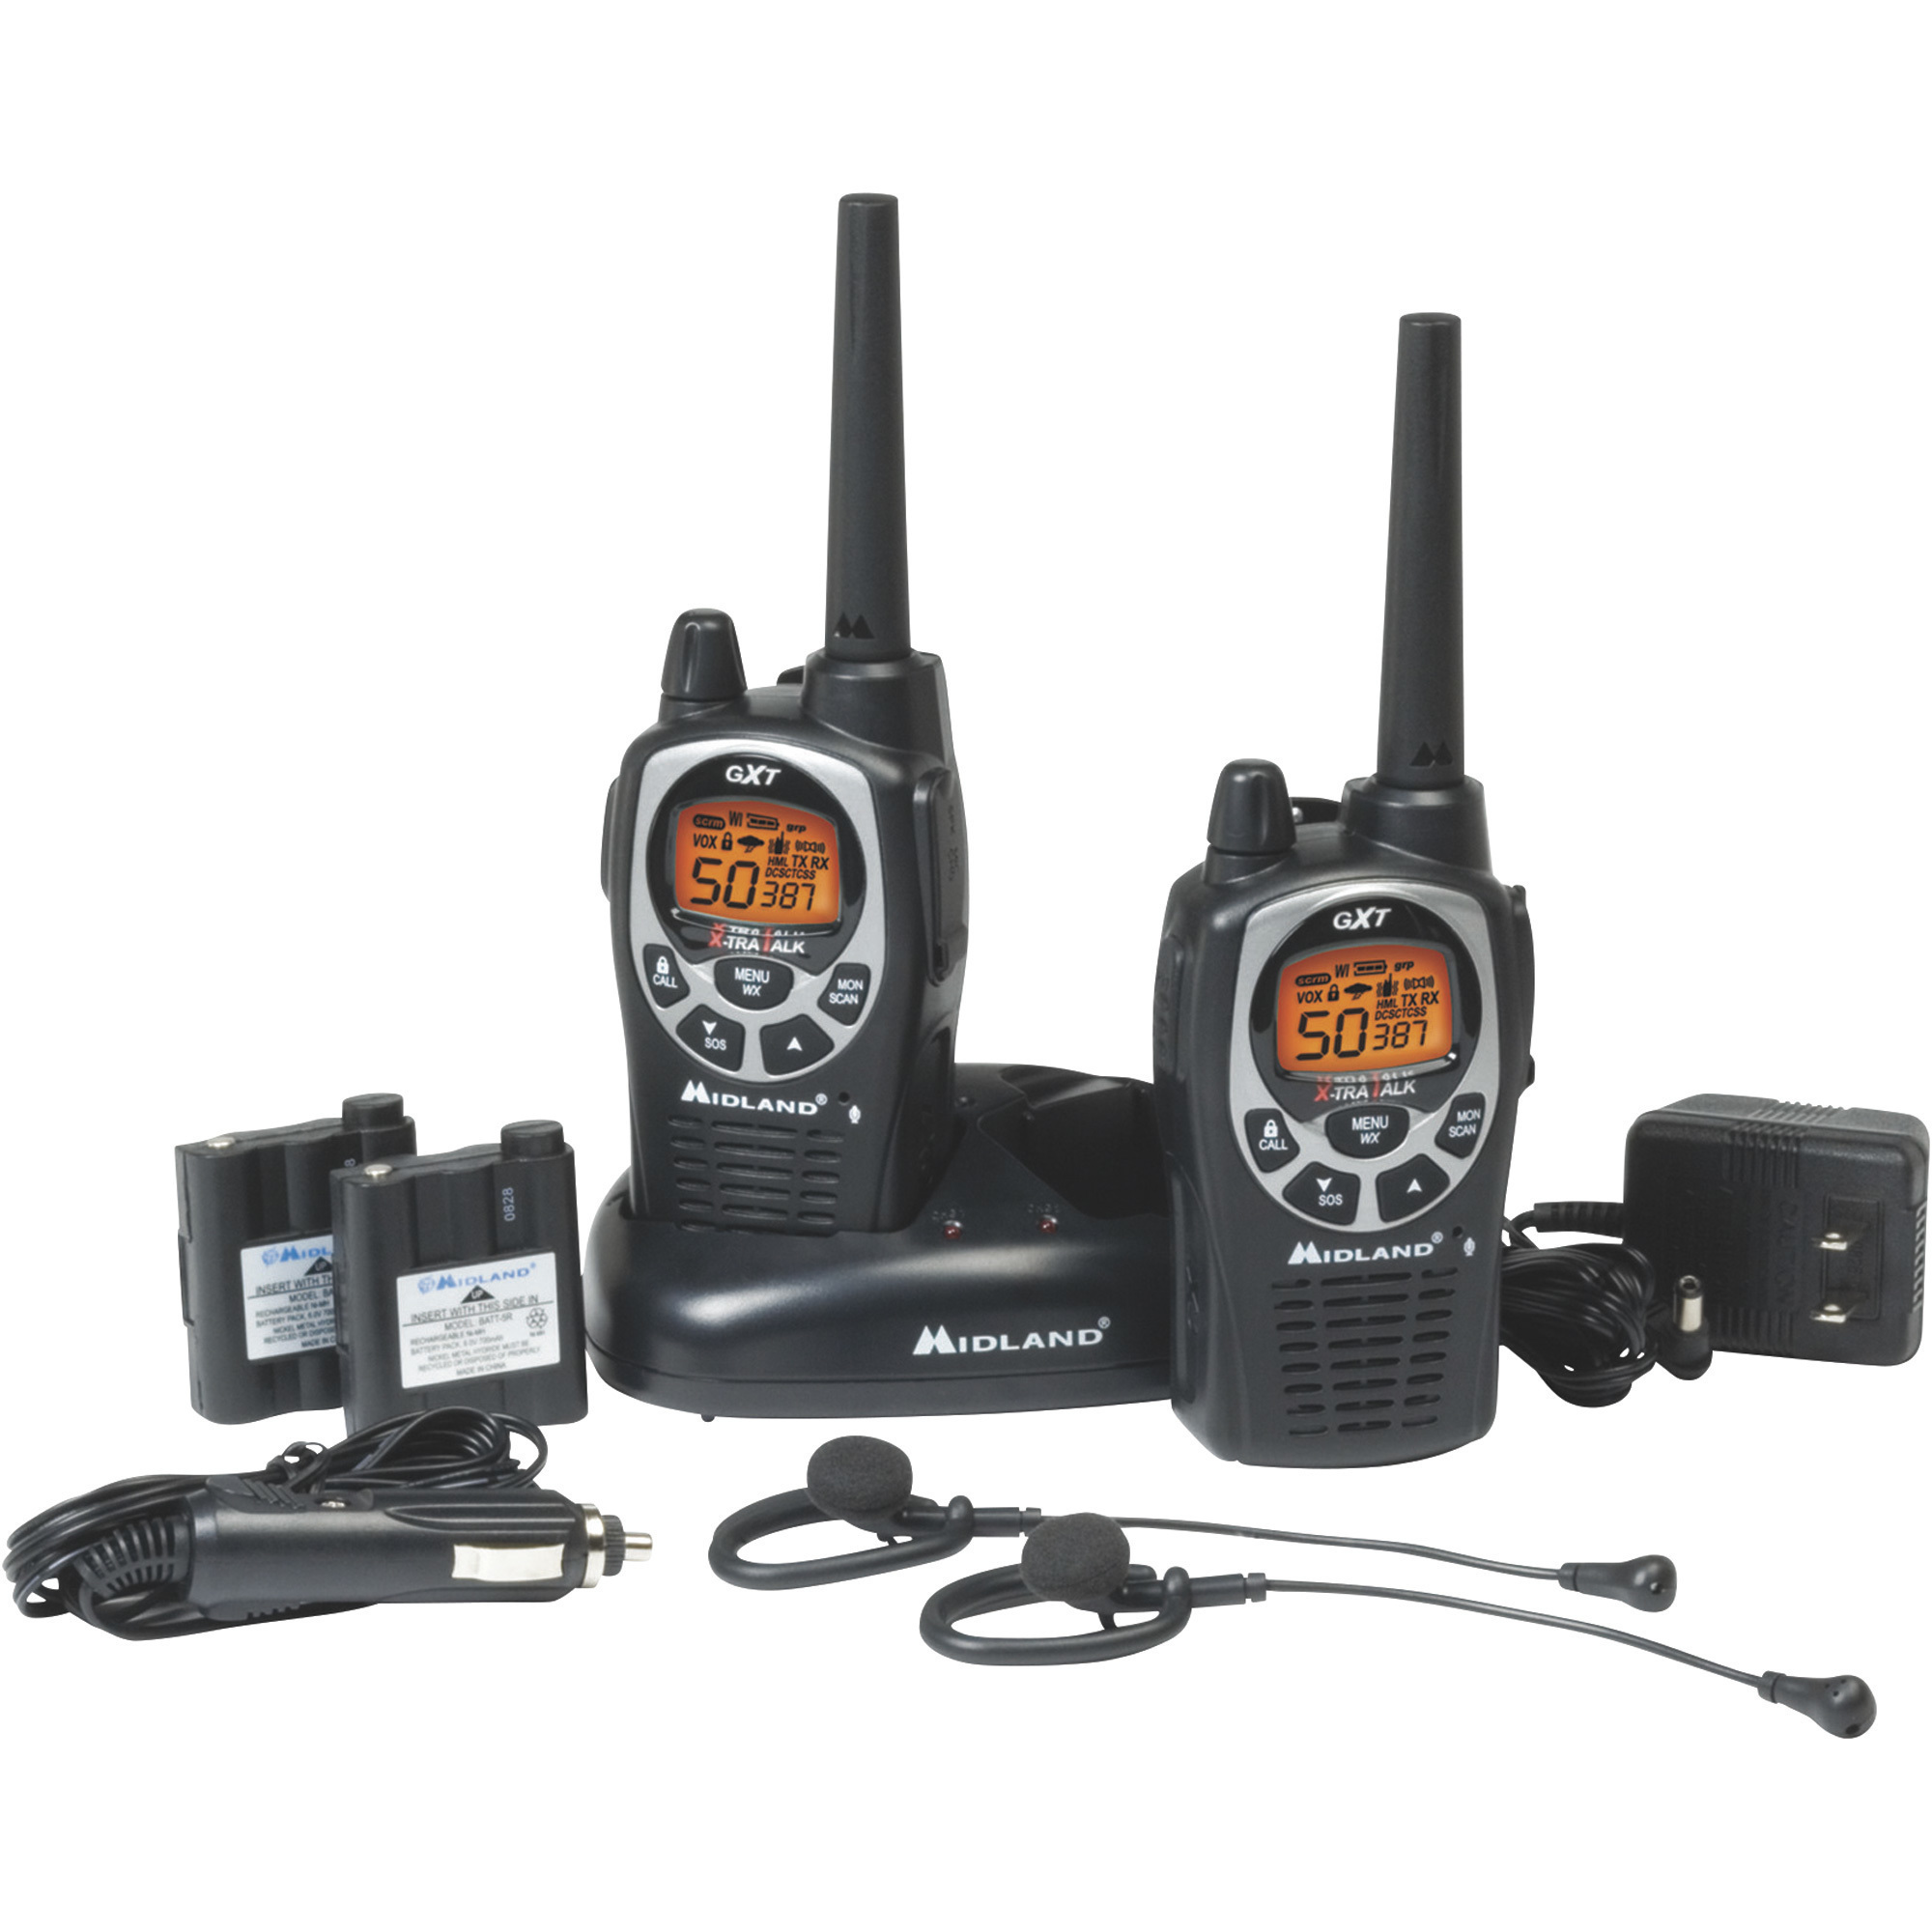 Midland Handheld GMRS Radios, Pair, 36-Mile Range, Waterproof, Model GXT1000VP4